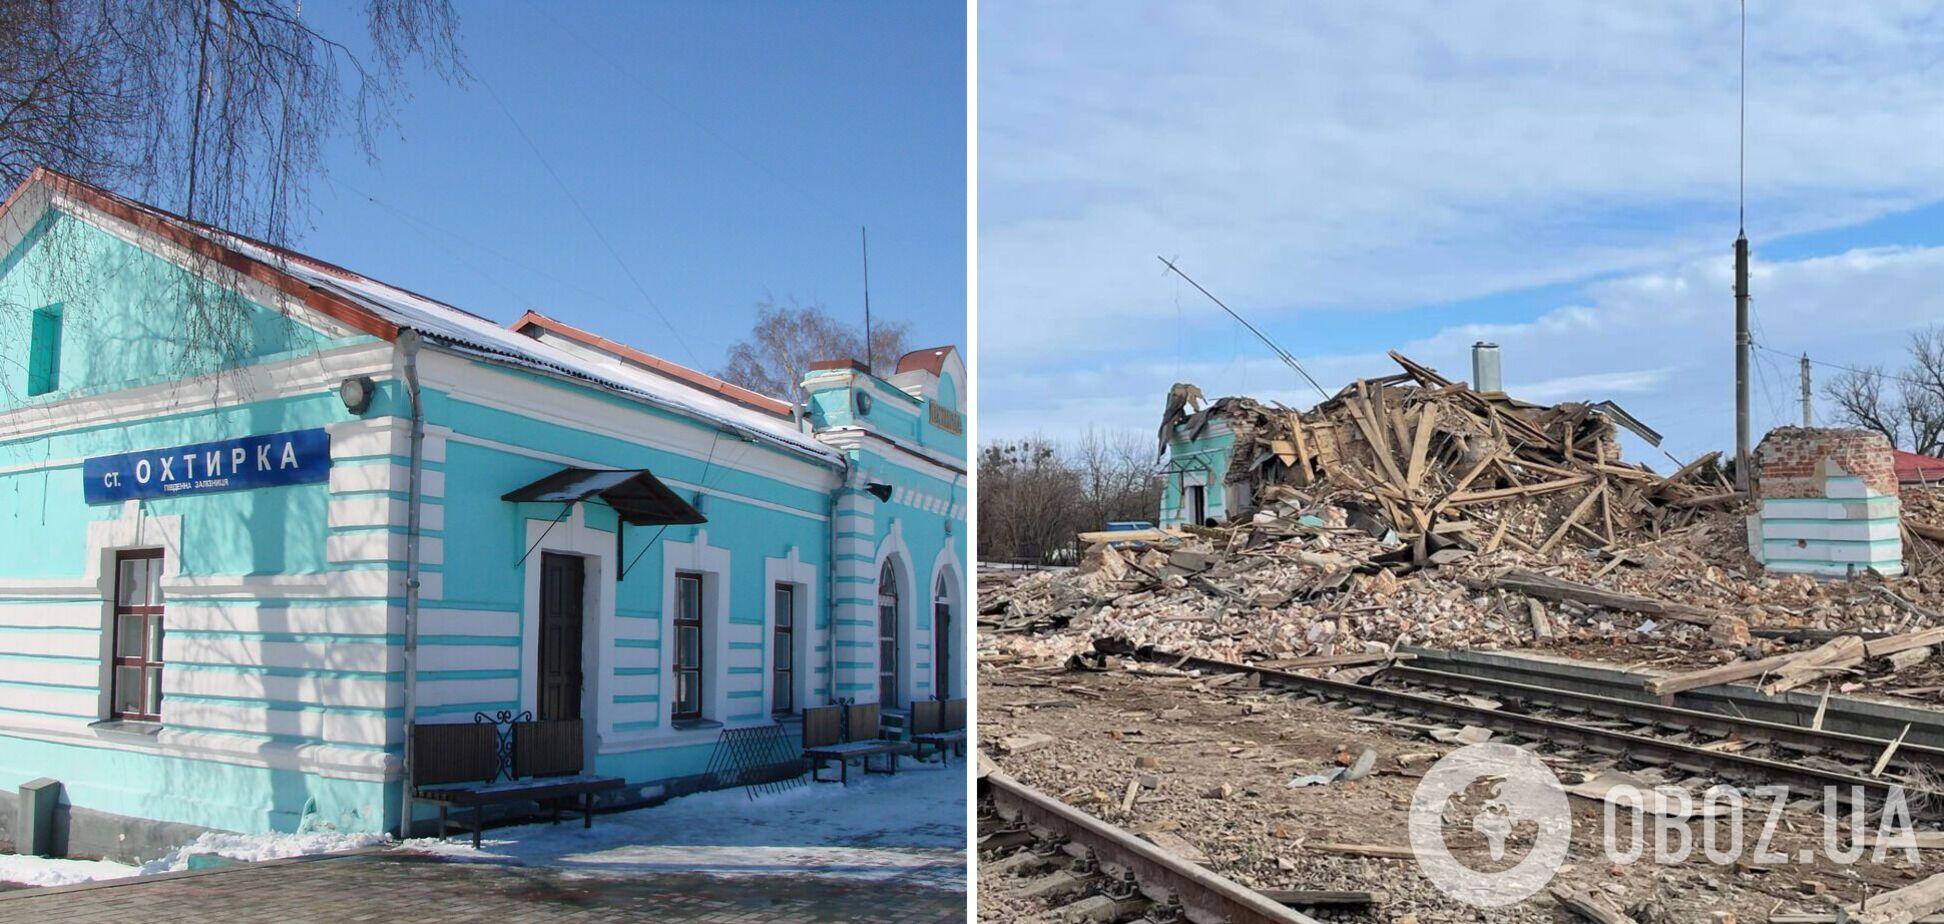 Устоял даже во Второй мировой: появилось фото уничтоженного россиянами железнодорожного вокзала в Ахтырке